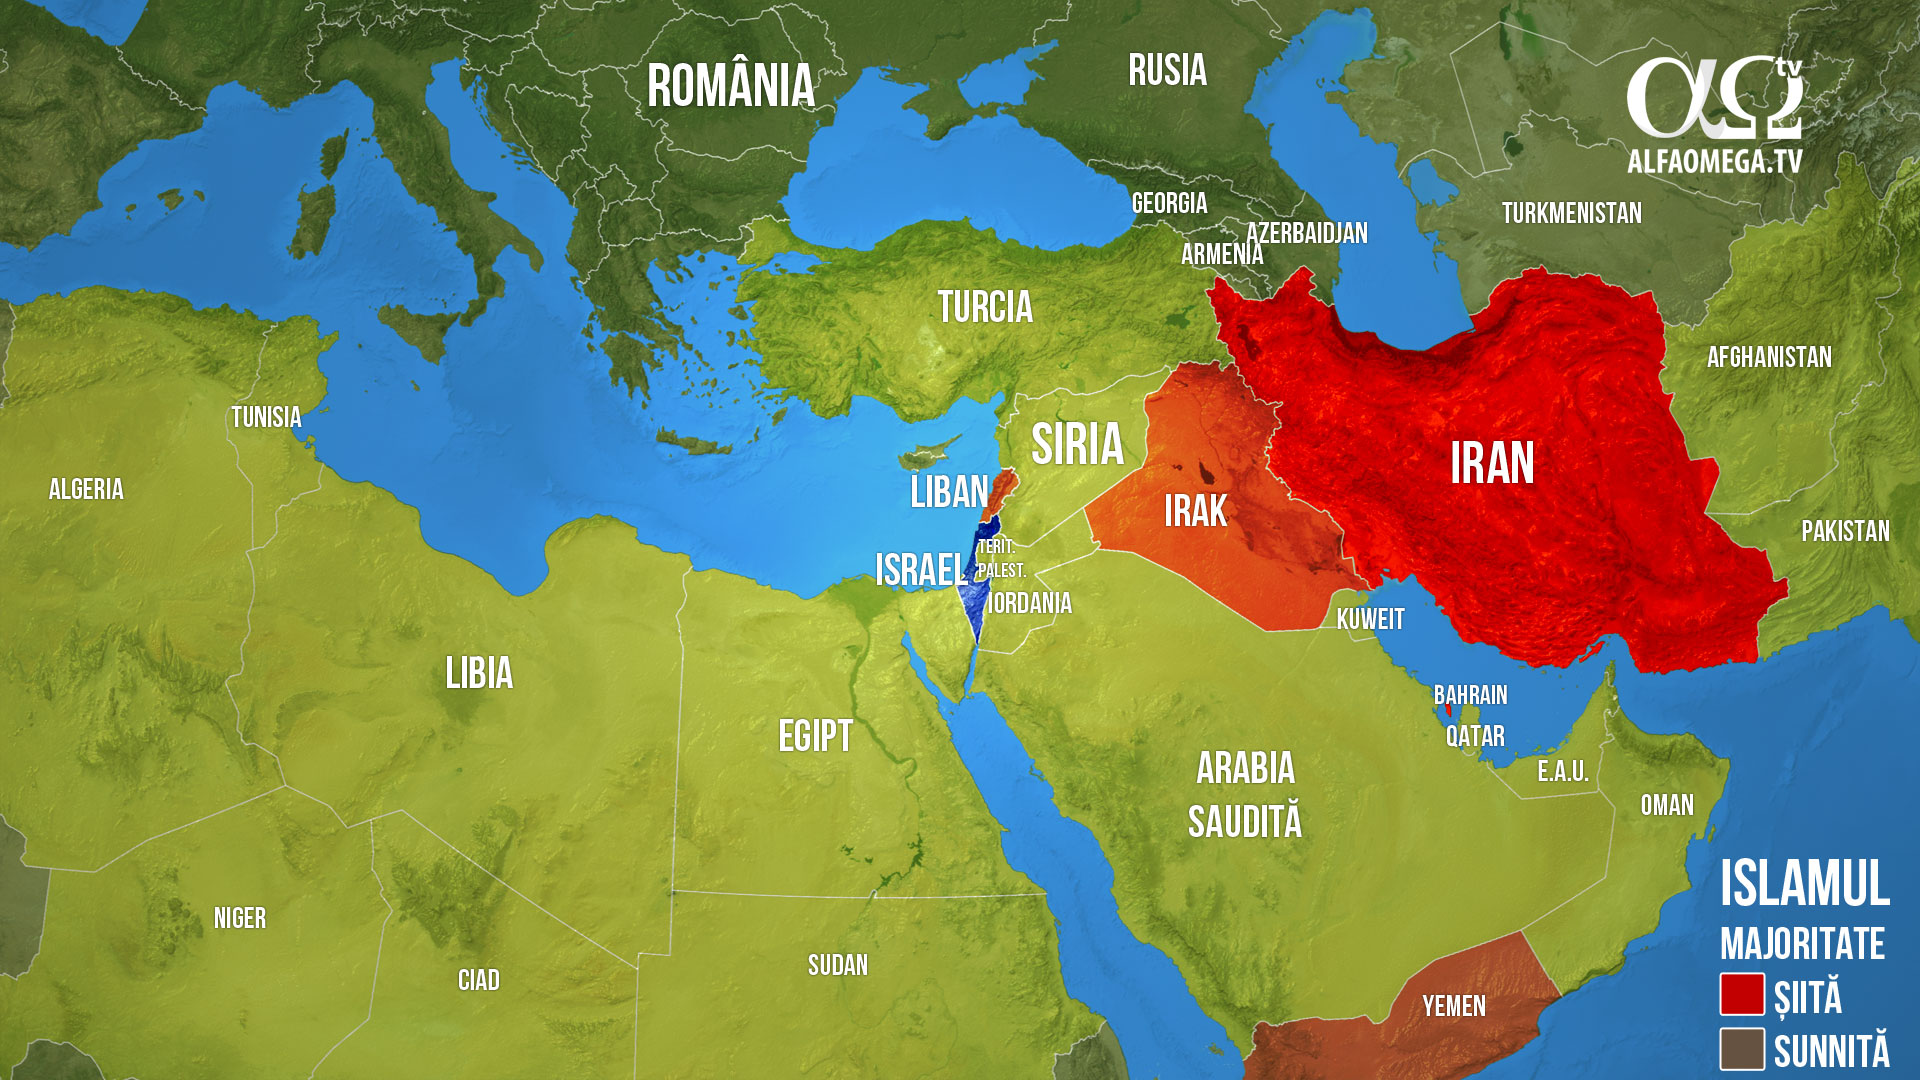 Coronavirusul și viitorul Orientului Mijlociu